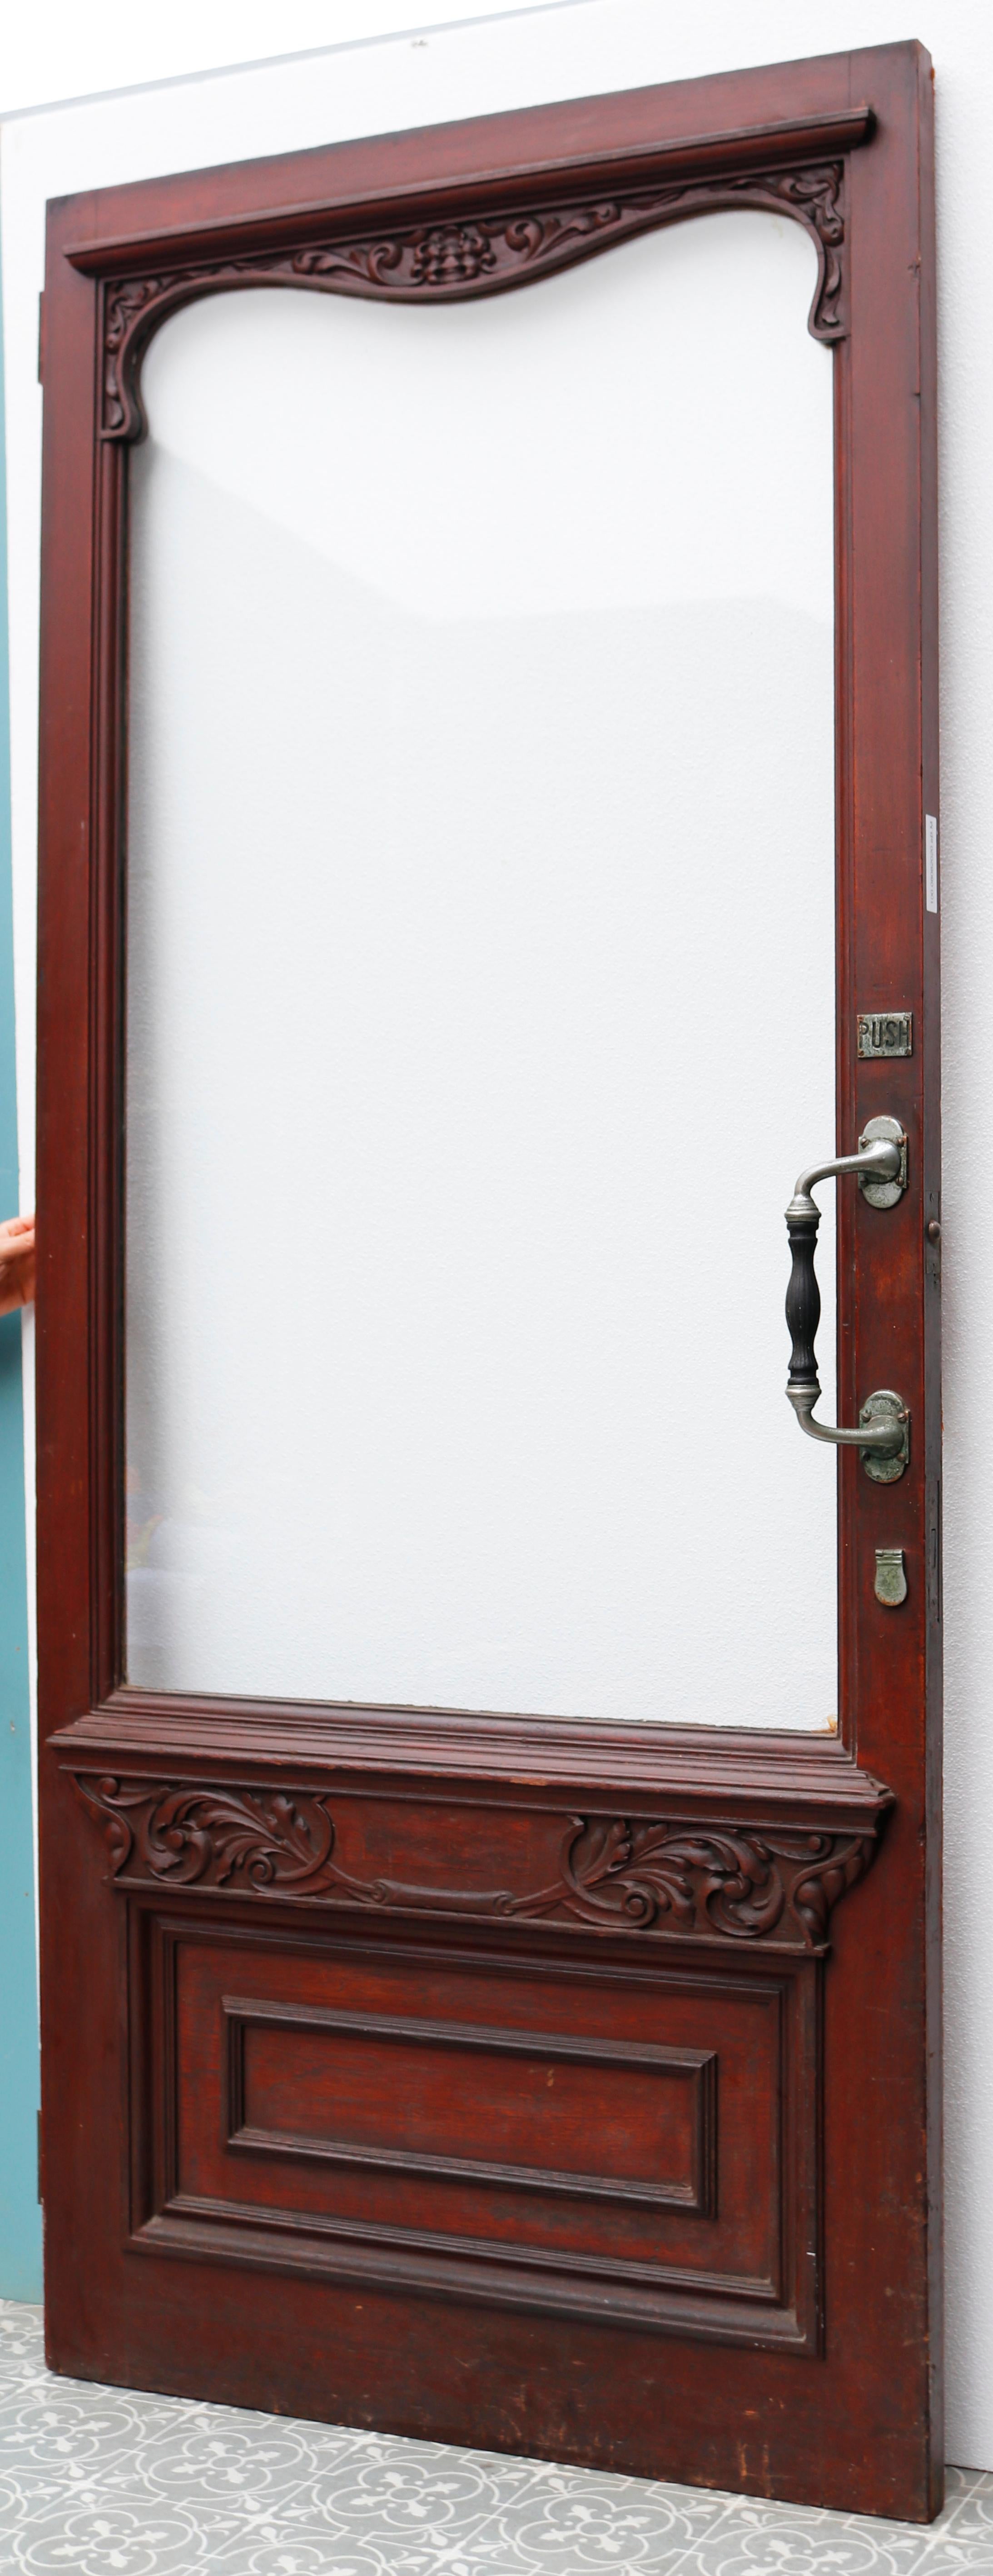 A Reclaimed Hardwood Exterior Door 4